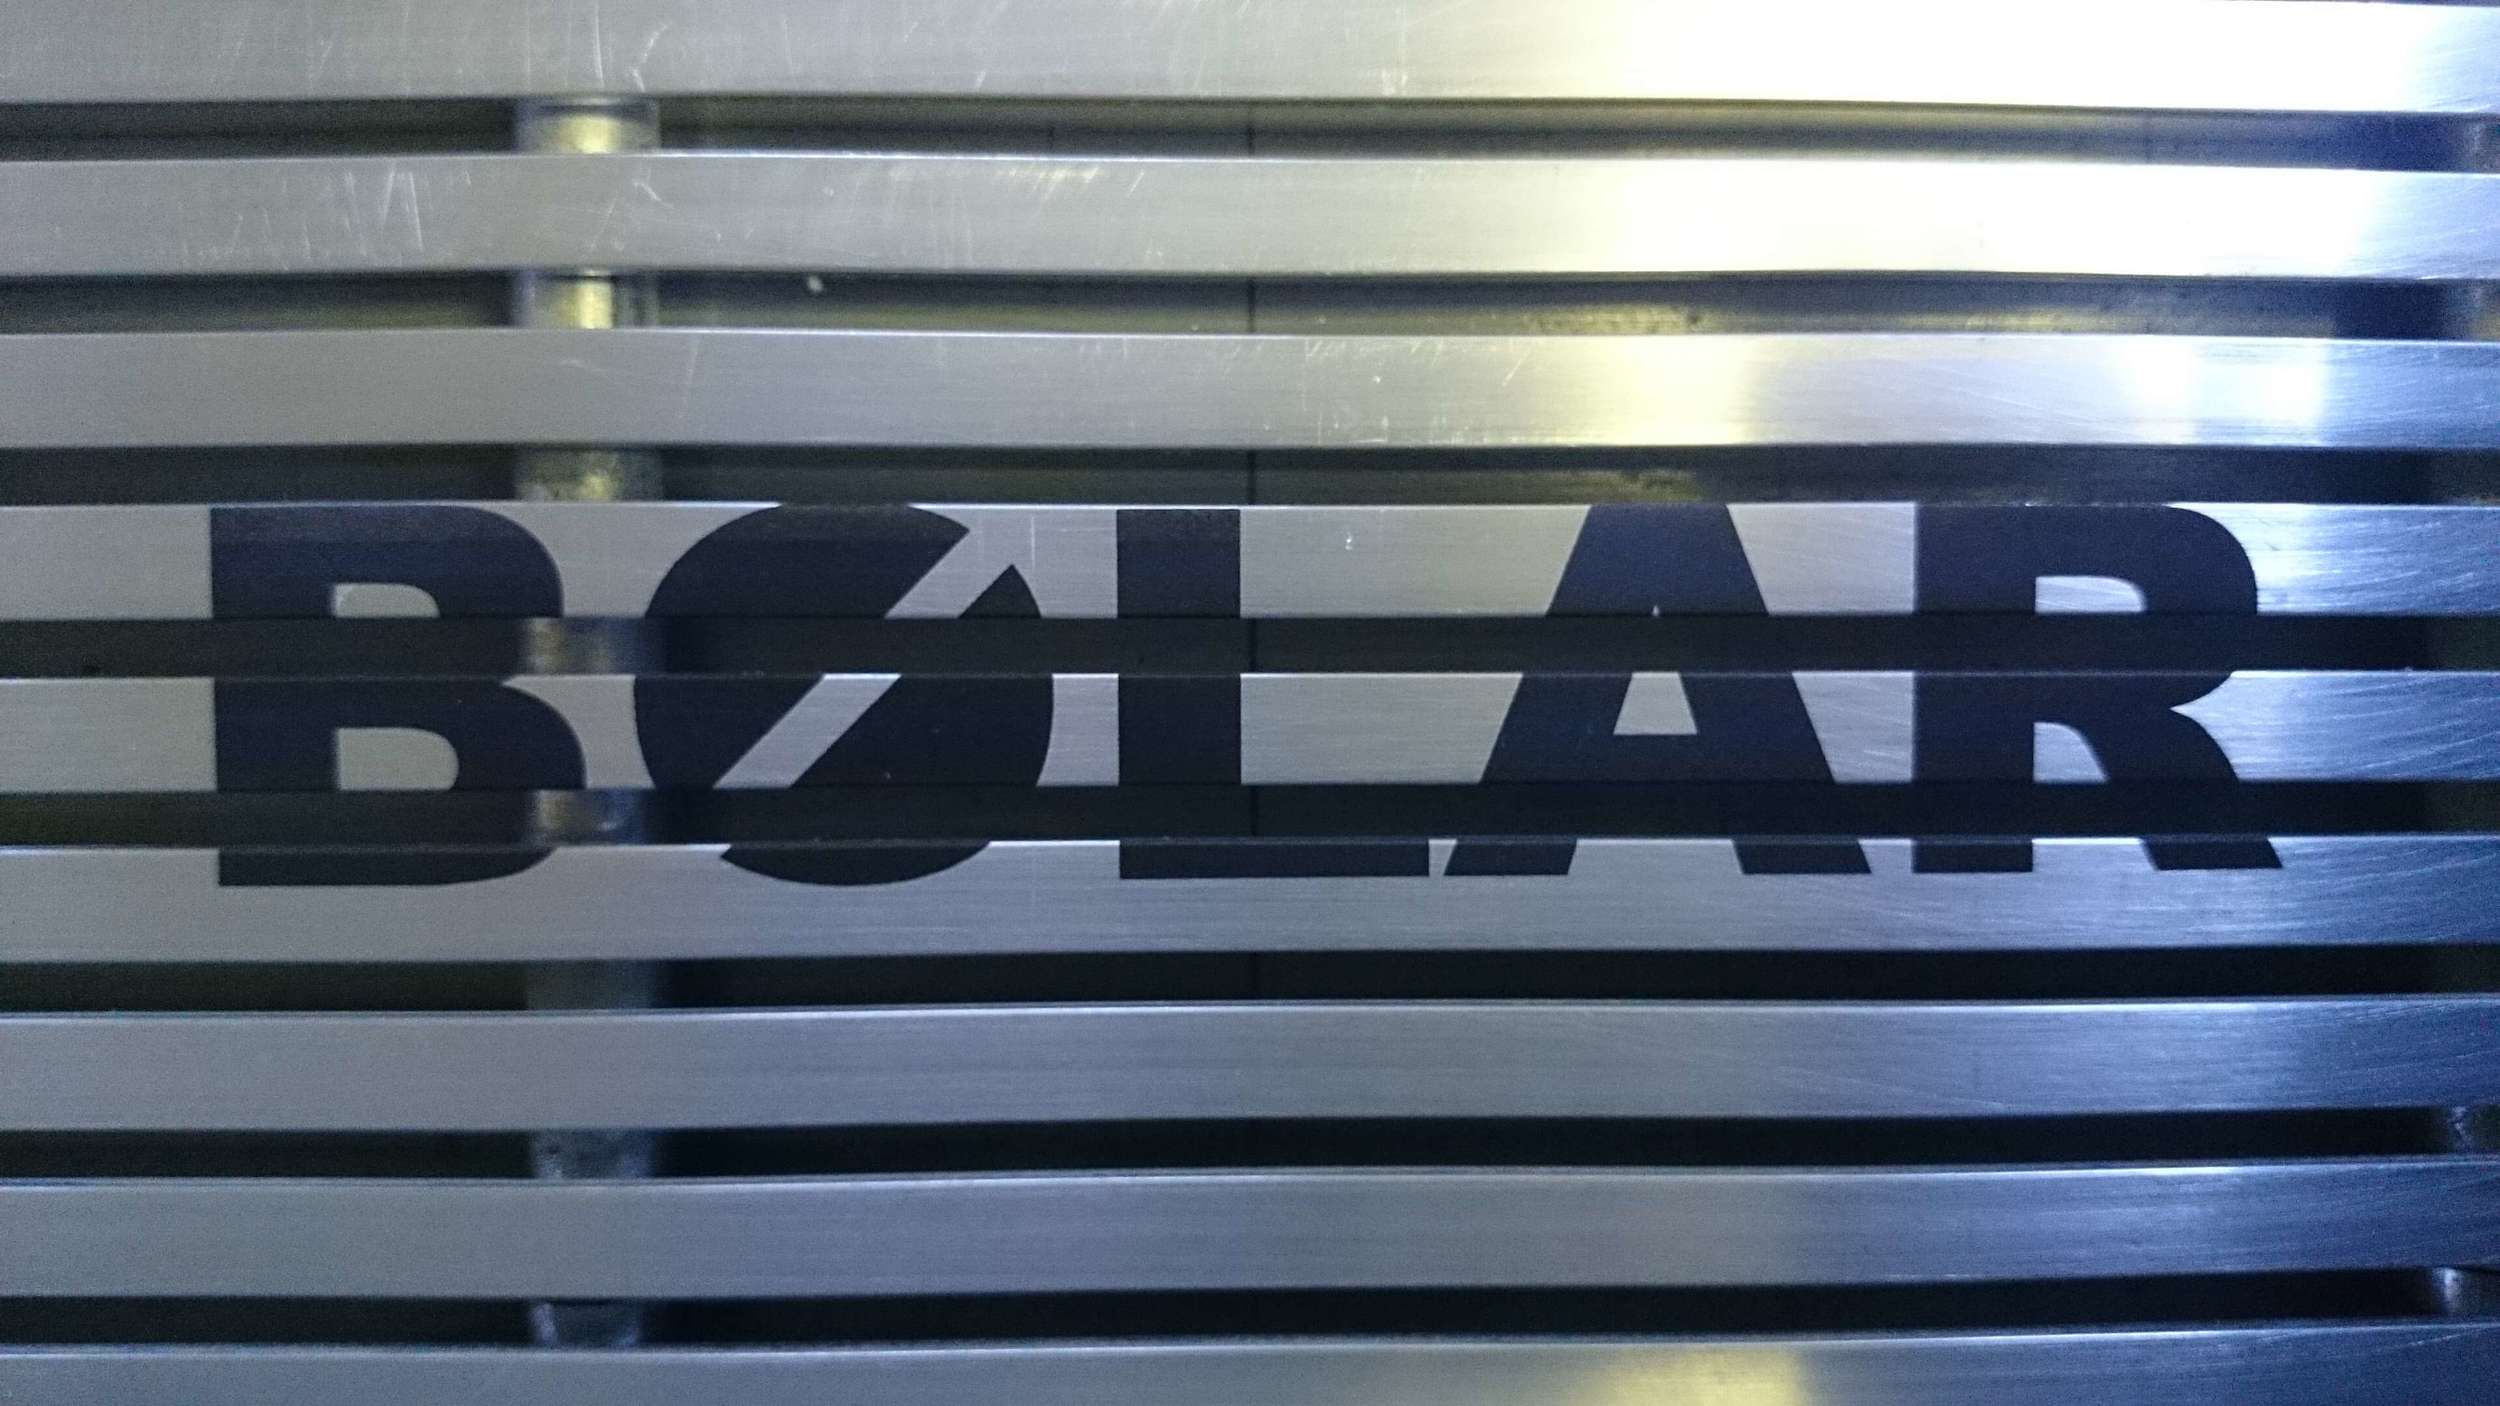 Grille de métal sur laquelle a été marquée au laser le logo de Bolar